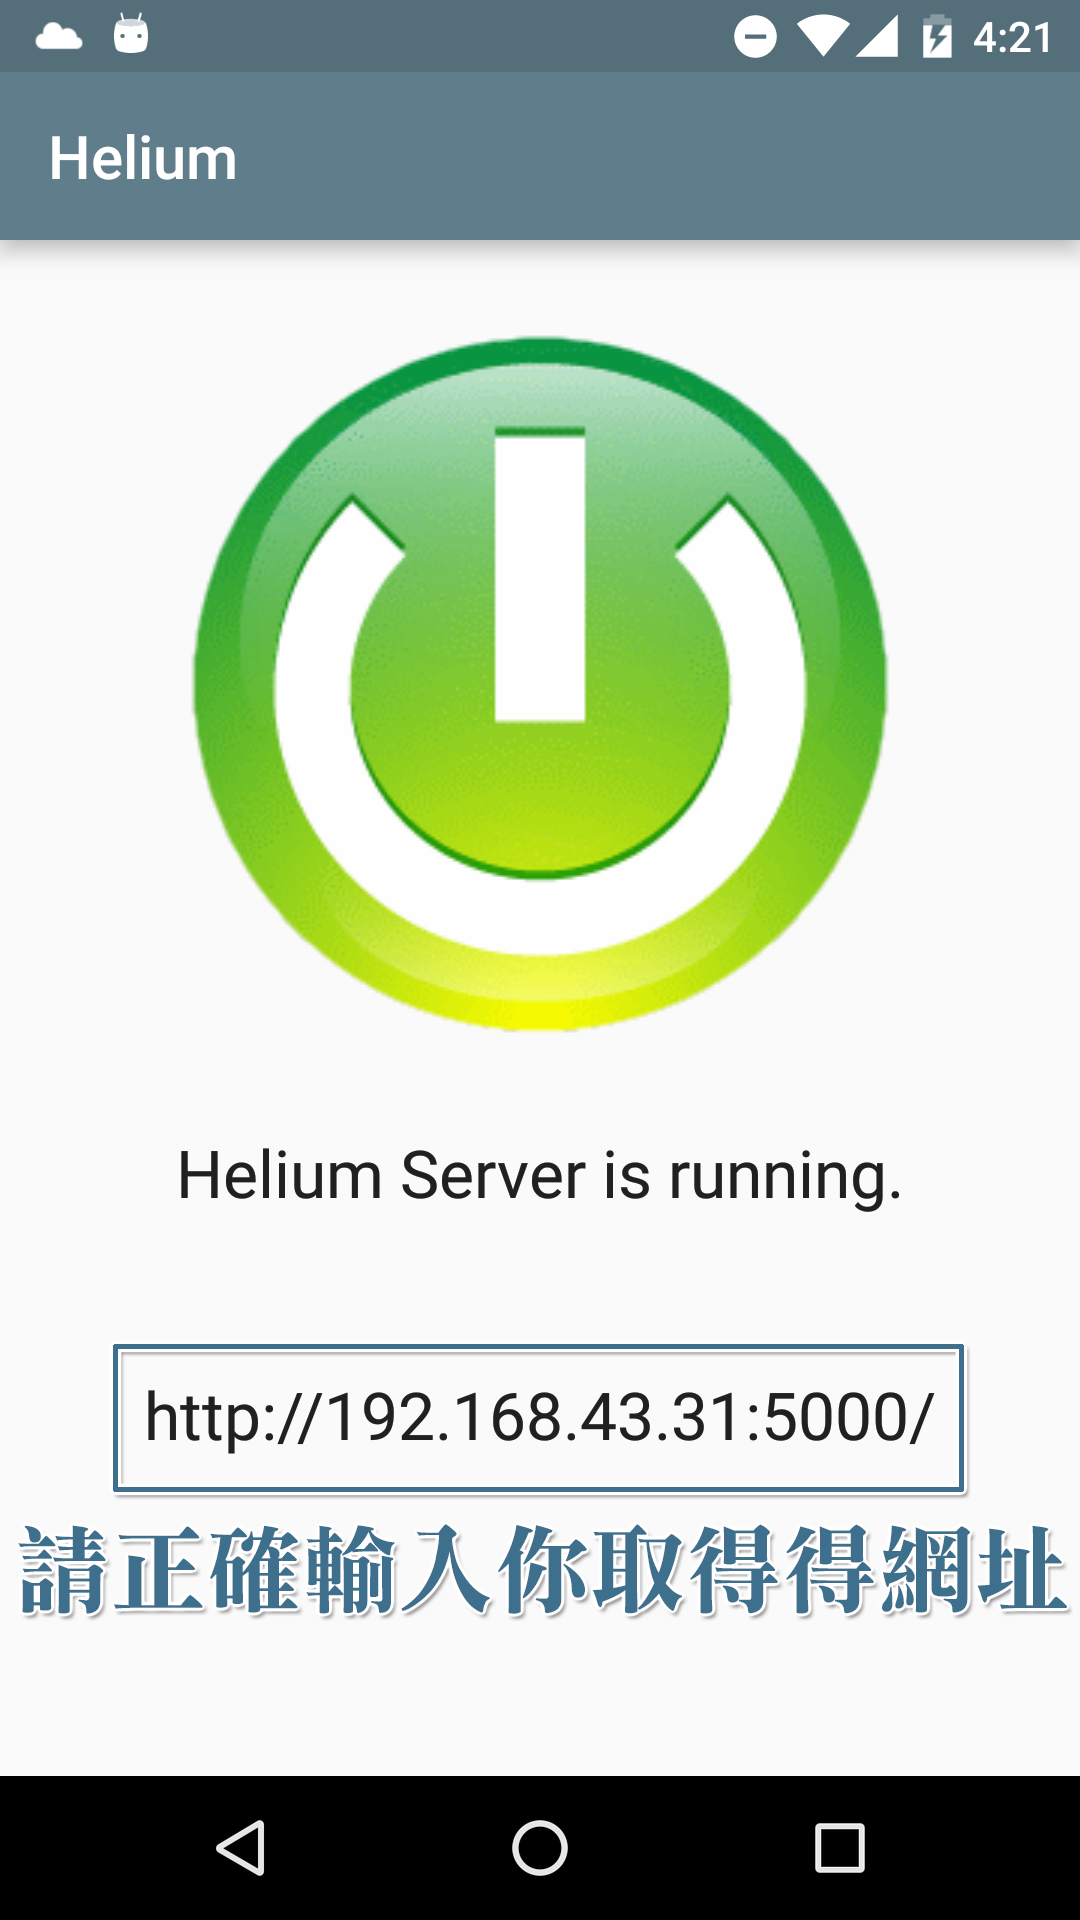 請正確輸入 Helium 提供給你的連線網址